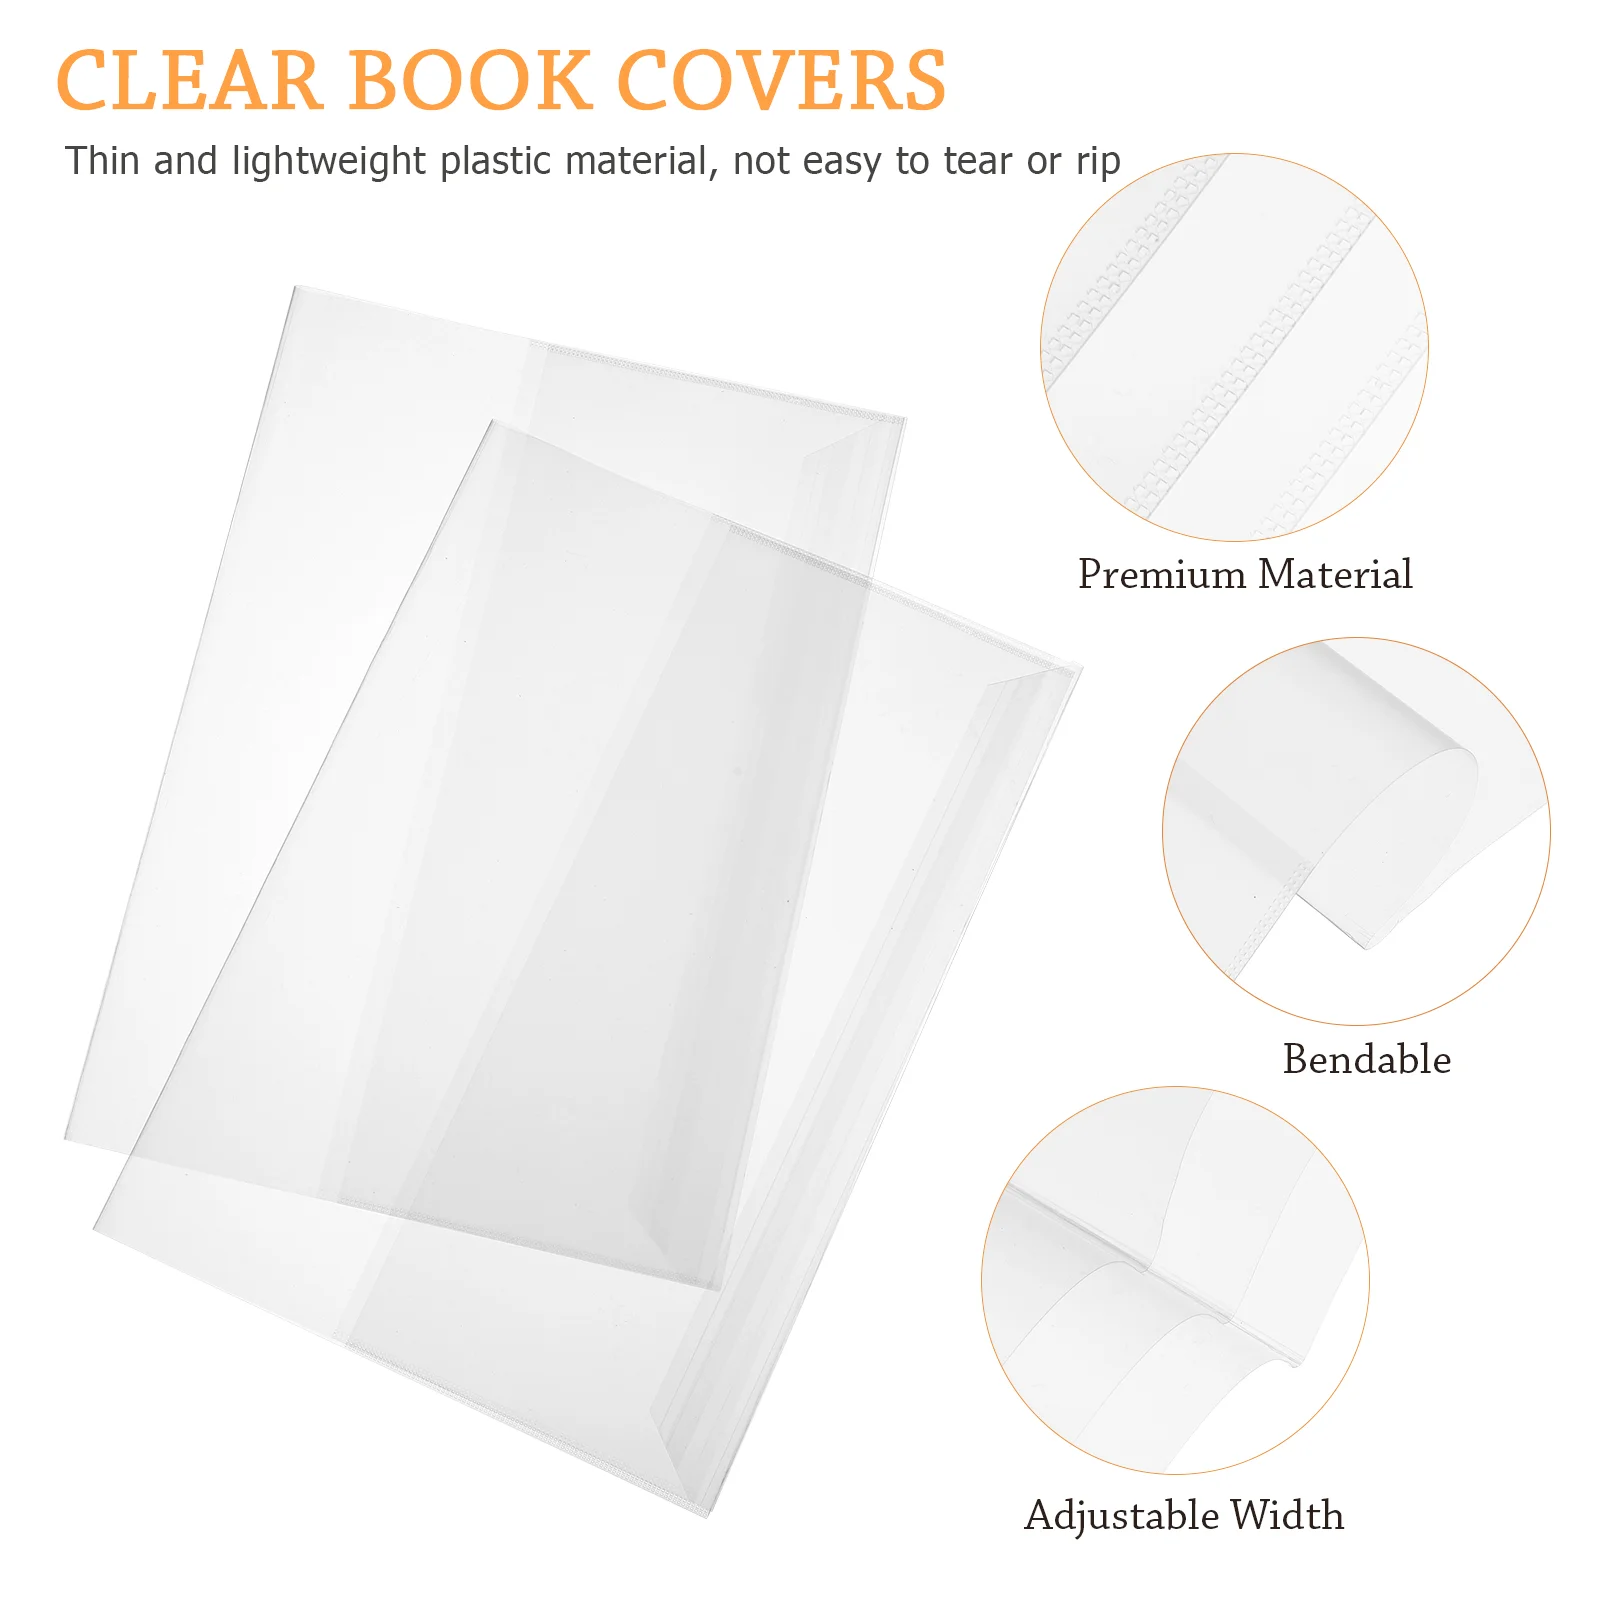 5 Pcs Capa Protetora De Livro Didático, Plástico Impermeável De Manga Caso De Livros Da Bíblia Bandejas Slipcase